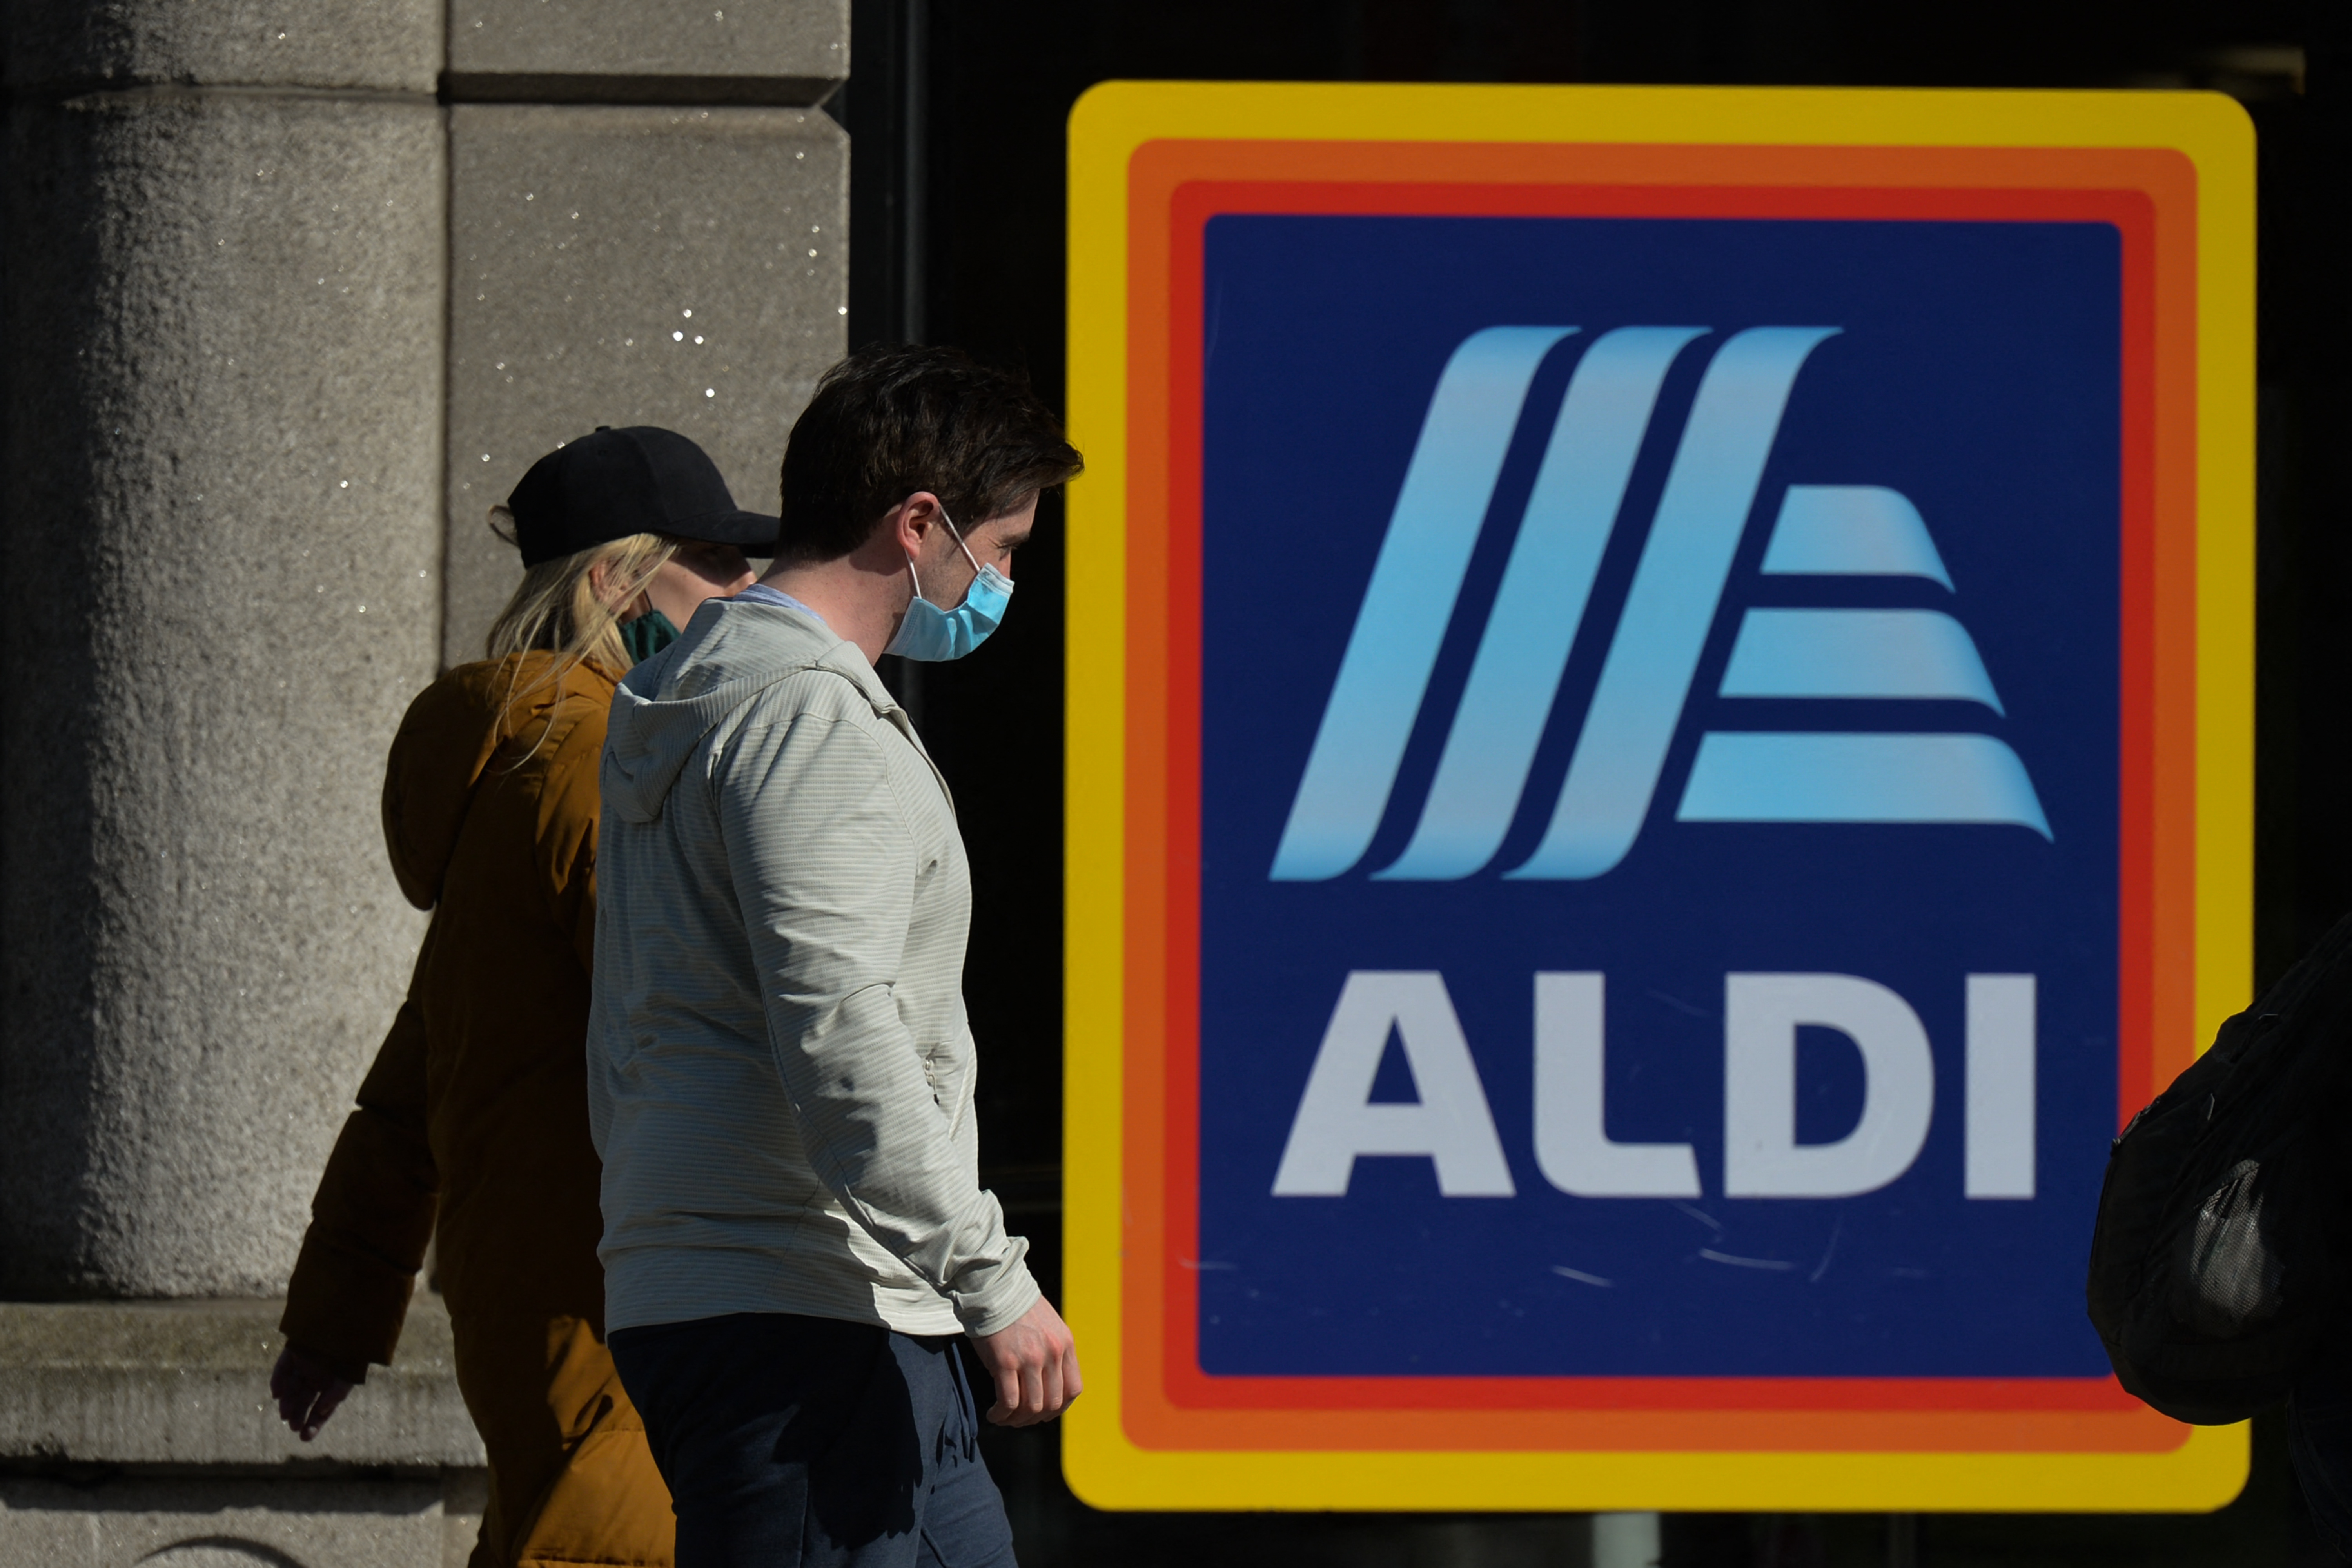 Megbüntették az Aldit, mert egy pécsi boltban február 1-én a hatósági árnál 10 forinttal drágábban árulták a cukrot